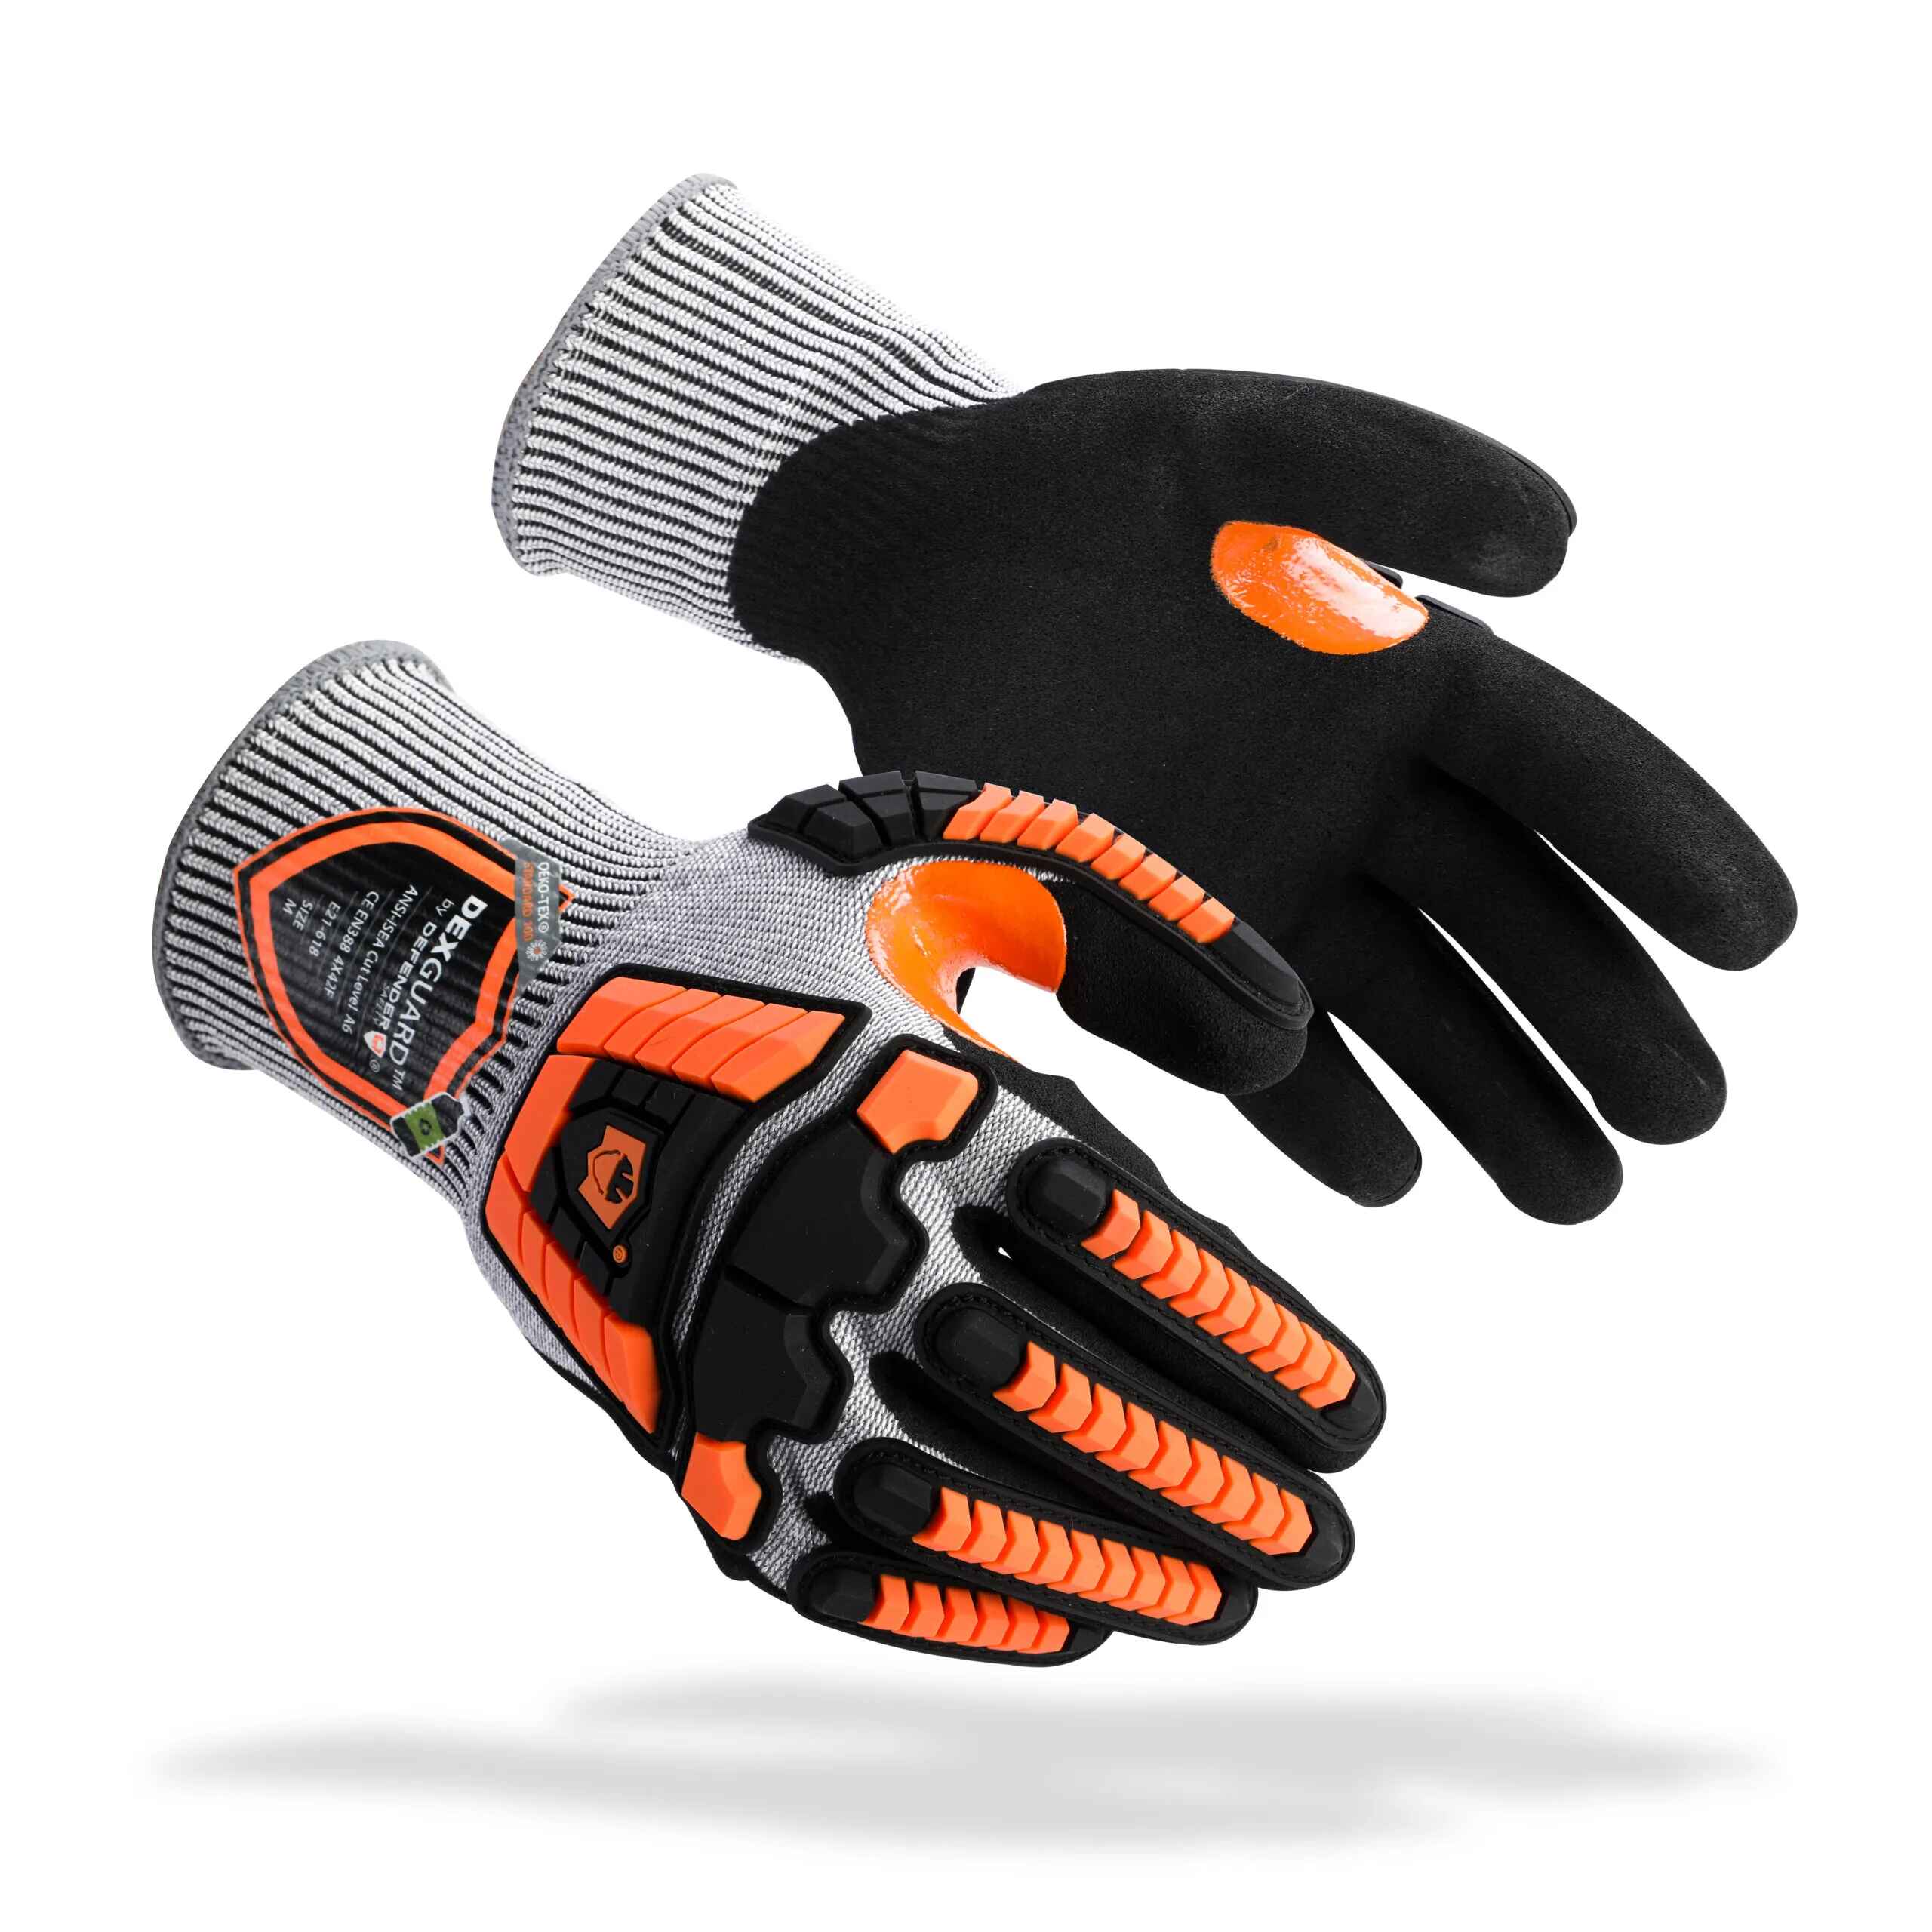 Anti-Cutting Glass Handling Gloves / Metal Handling Gloves /Wood